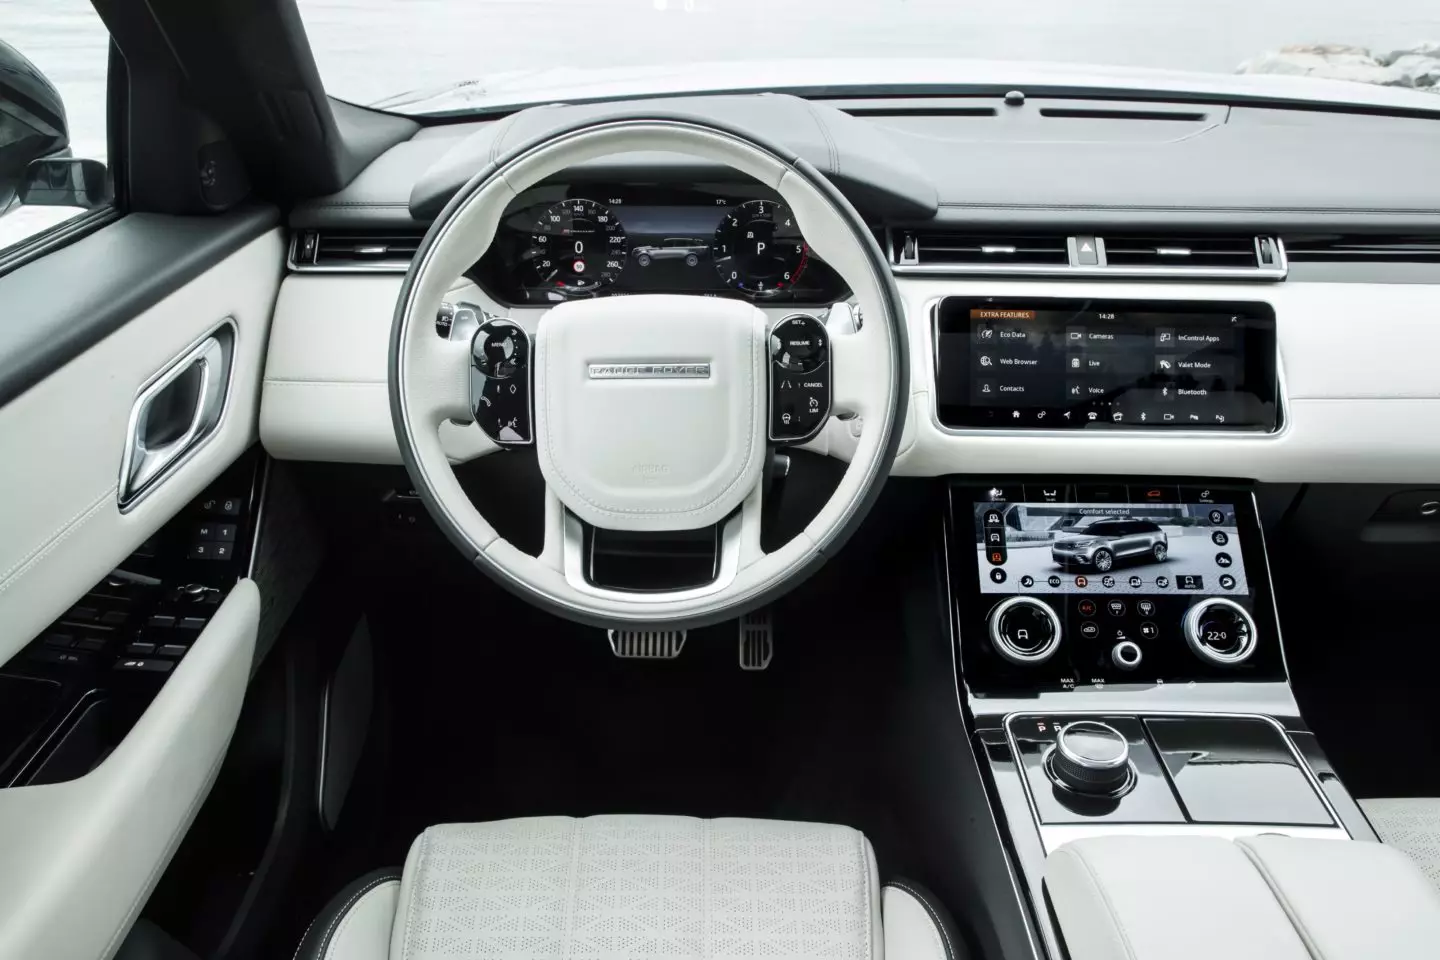 Viti i modelit Range Rover Velar 2019